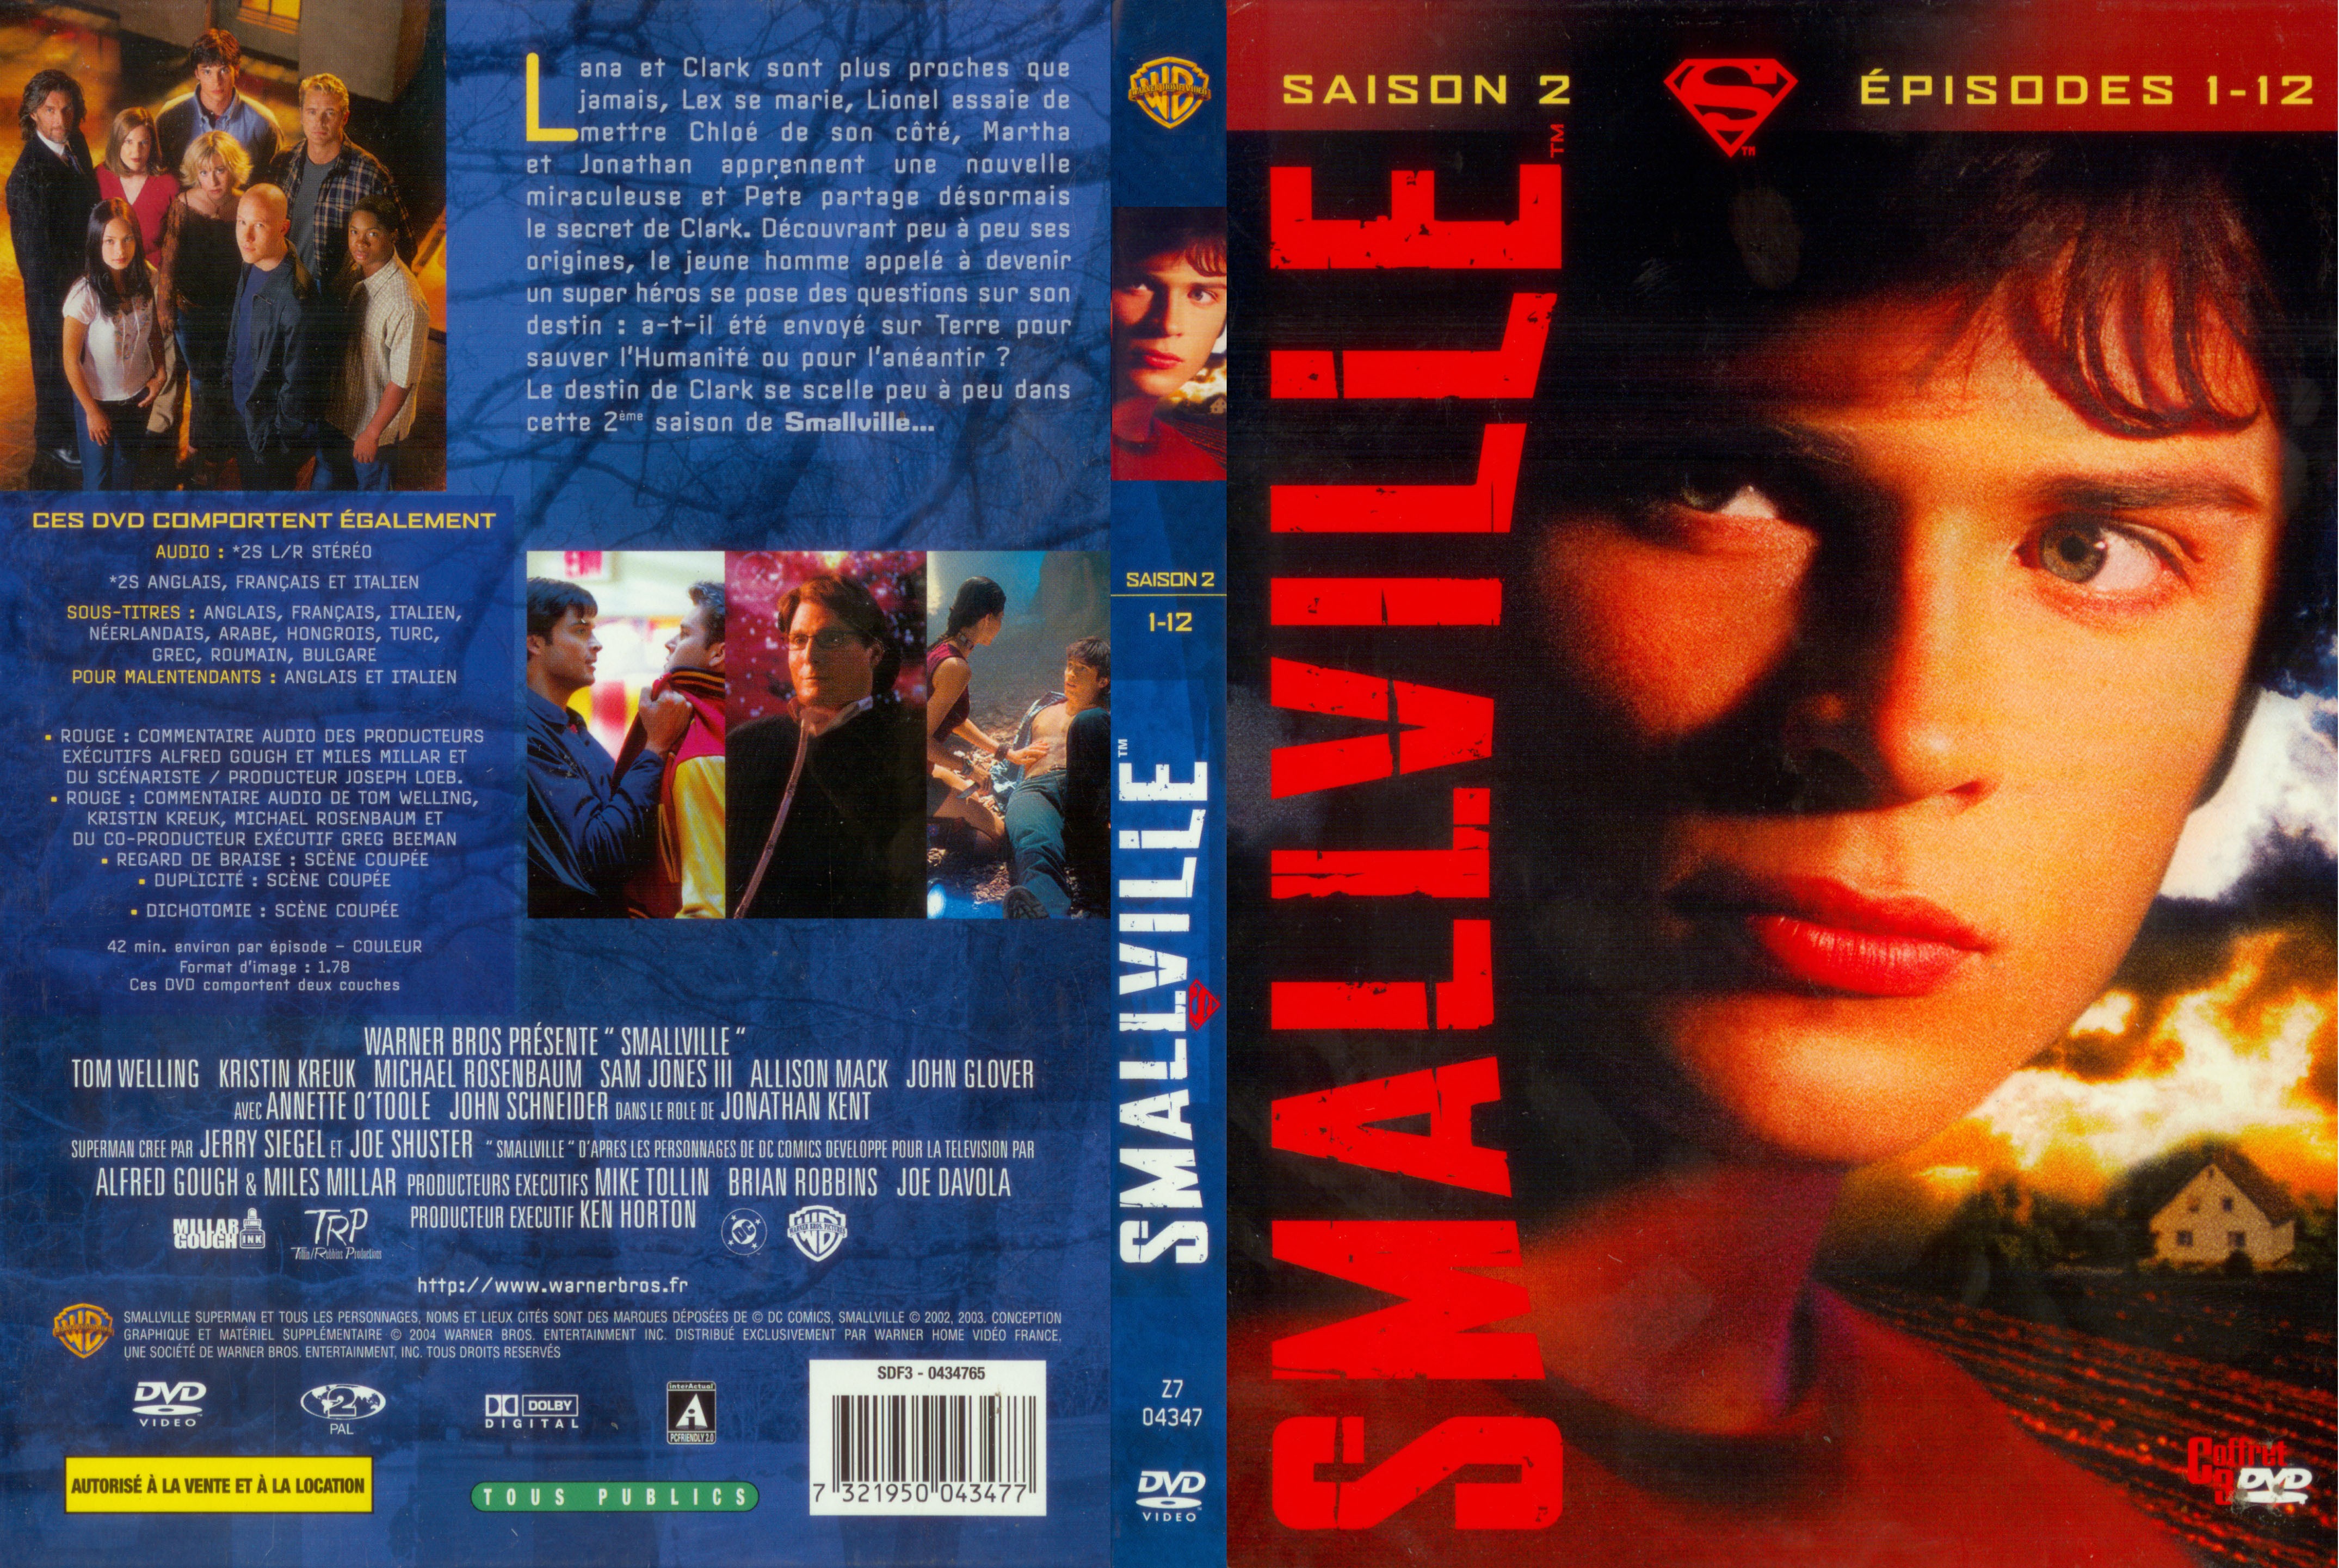 Jaquette DVD Smallville saison 2 COFFRET 1